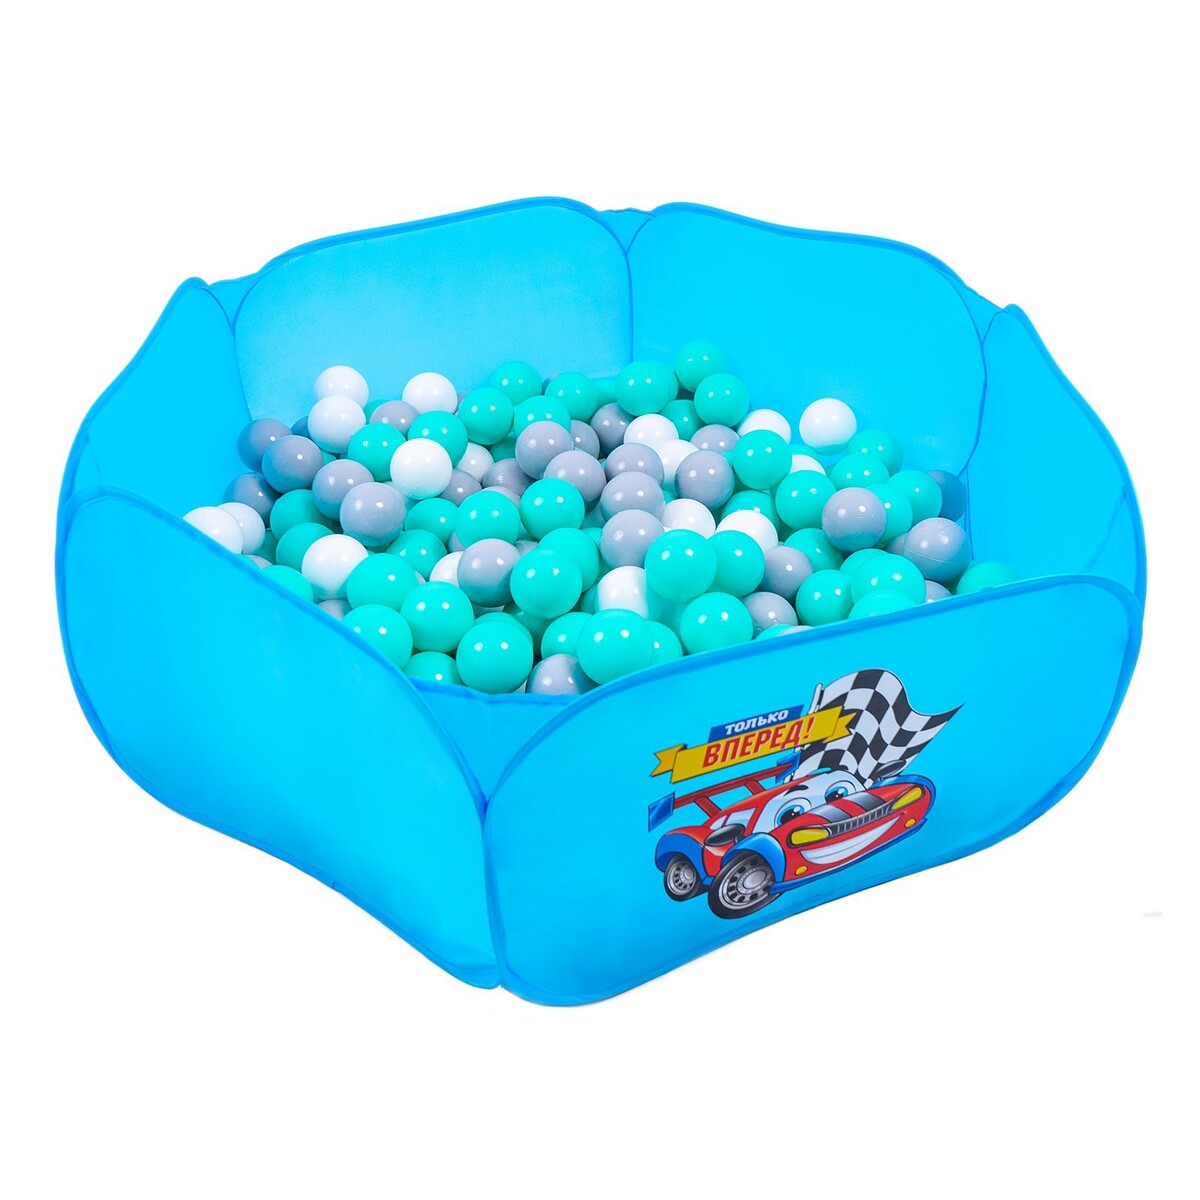 Шарики для сухого бассейна с рисунком, диаметр шара 7,5 см, набор 30 штук, цвет бирюзовый, белый, серый playmobil игровой набор руины фей летучих мышей